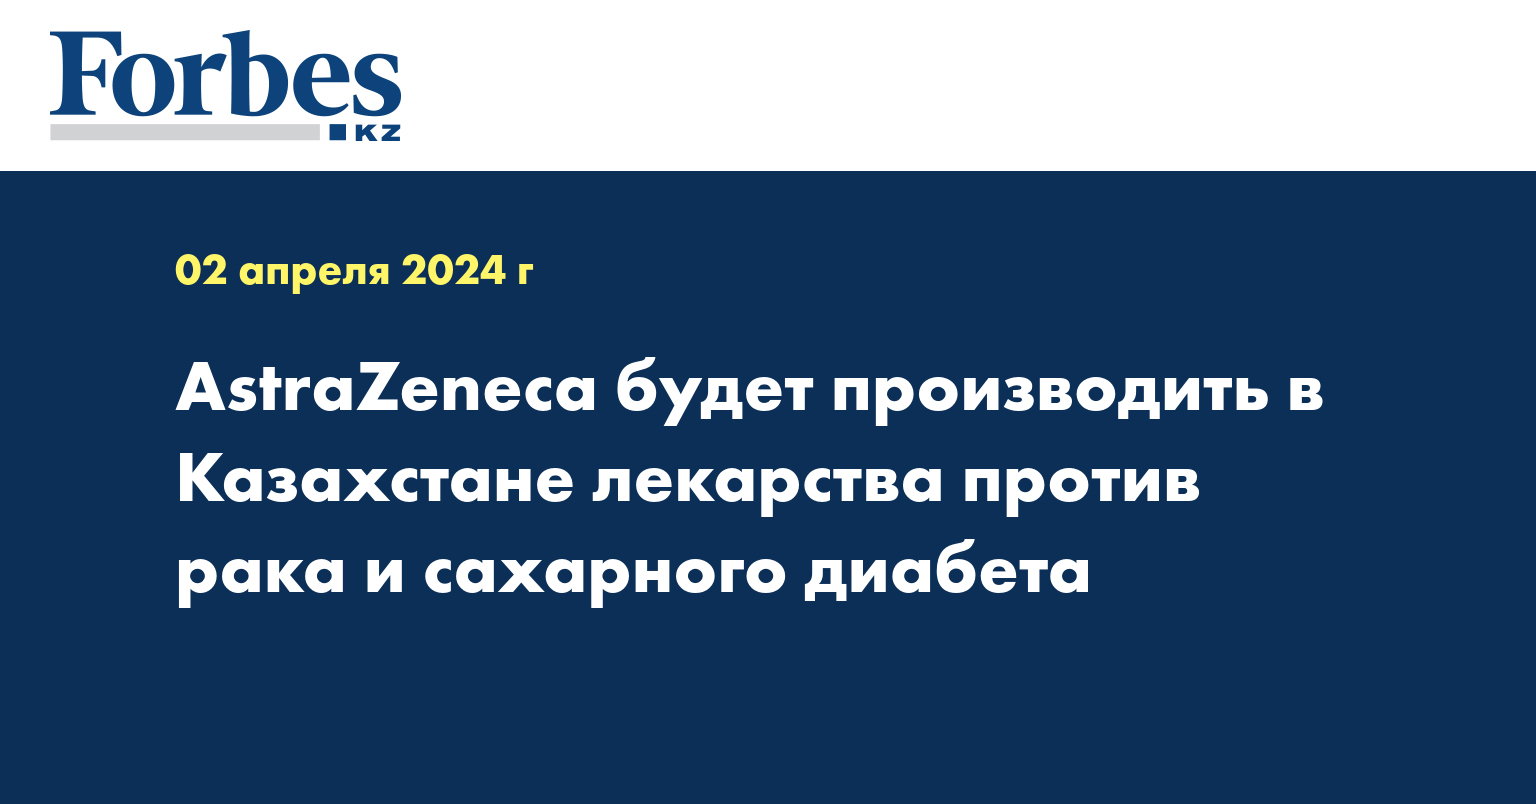 AstraZeneca будет производить в Казахстане лекарства против рака и сахарного диабета